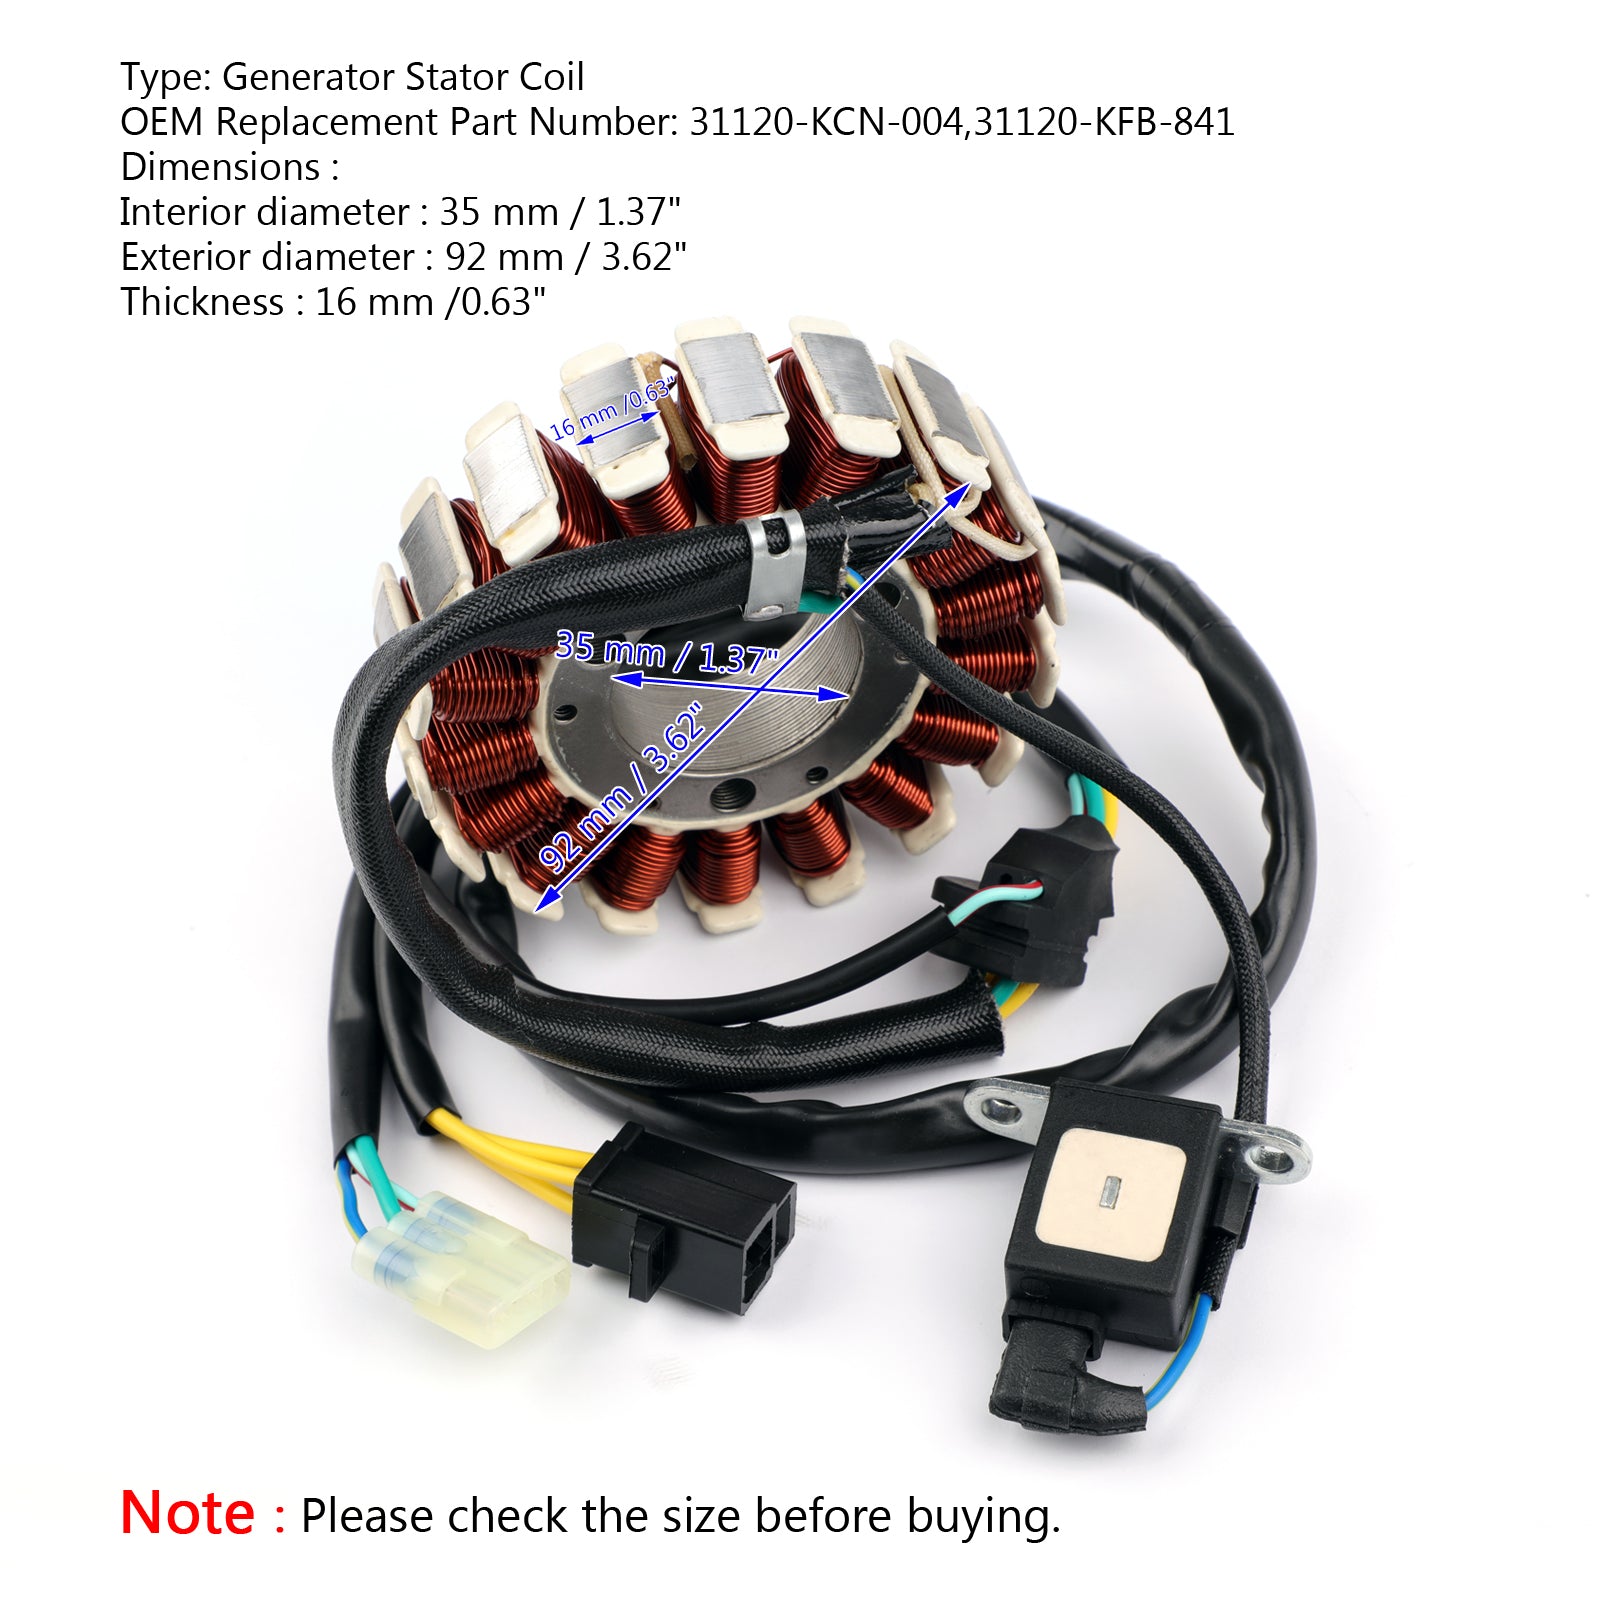 Generator Stator Coil For CLR125 XLR125 98-03 CRF230 SL230 02-09 31120-KFB-841 via fedex